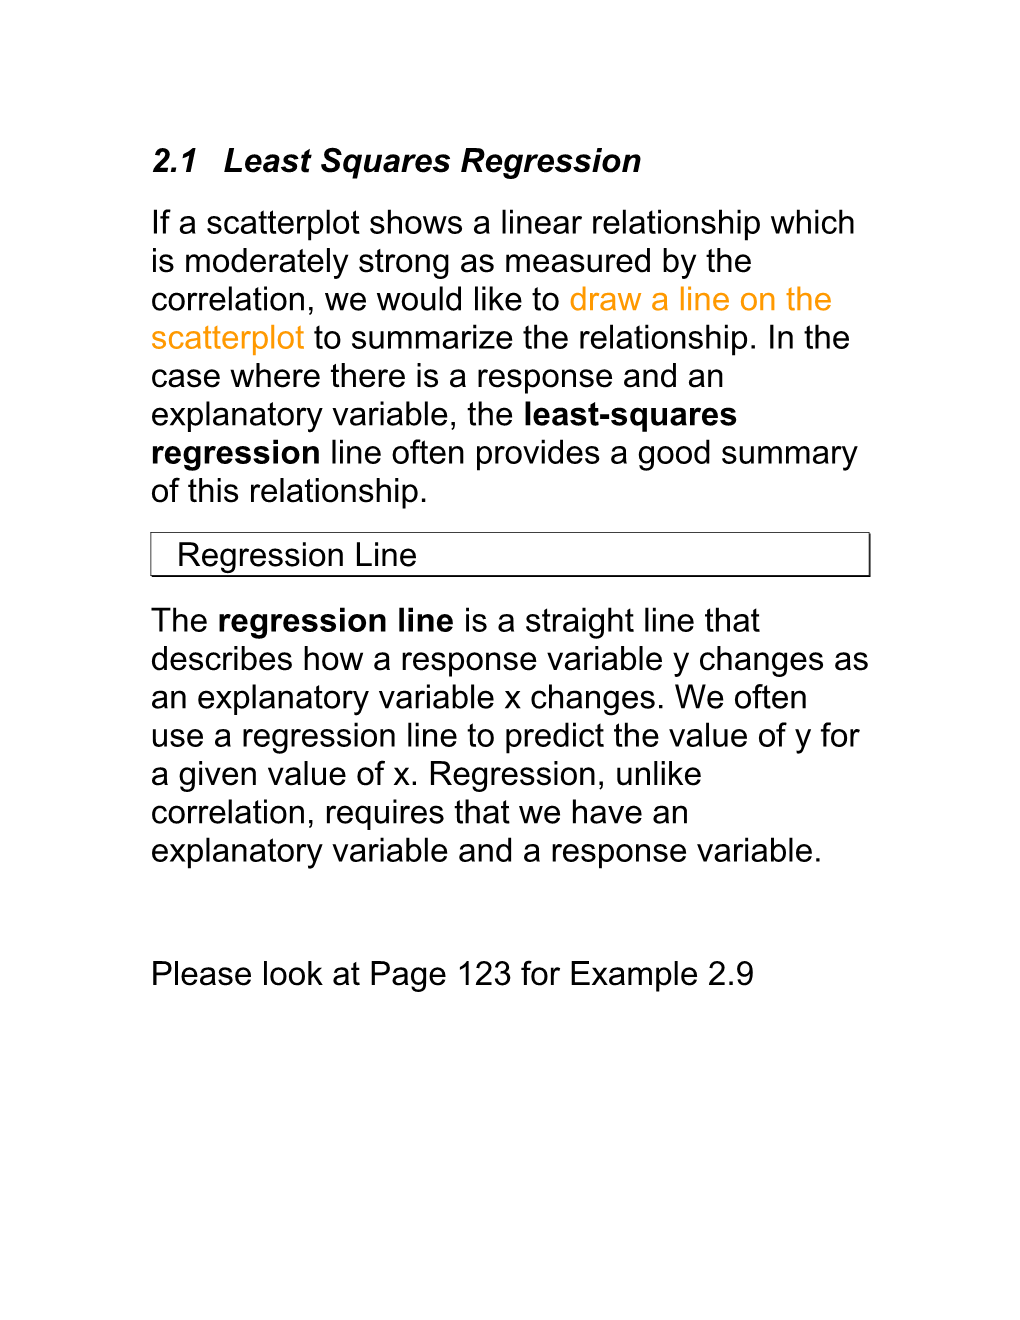 2.3Least Squares Regression